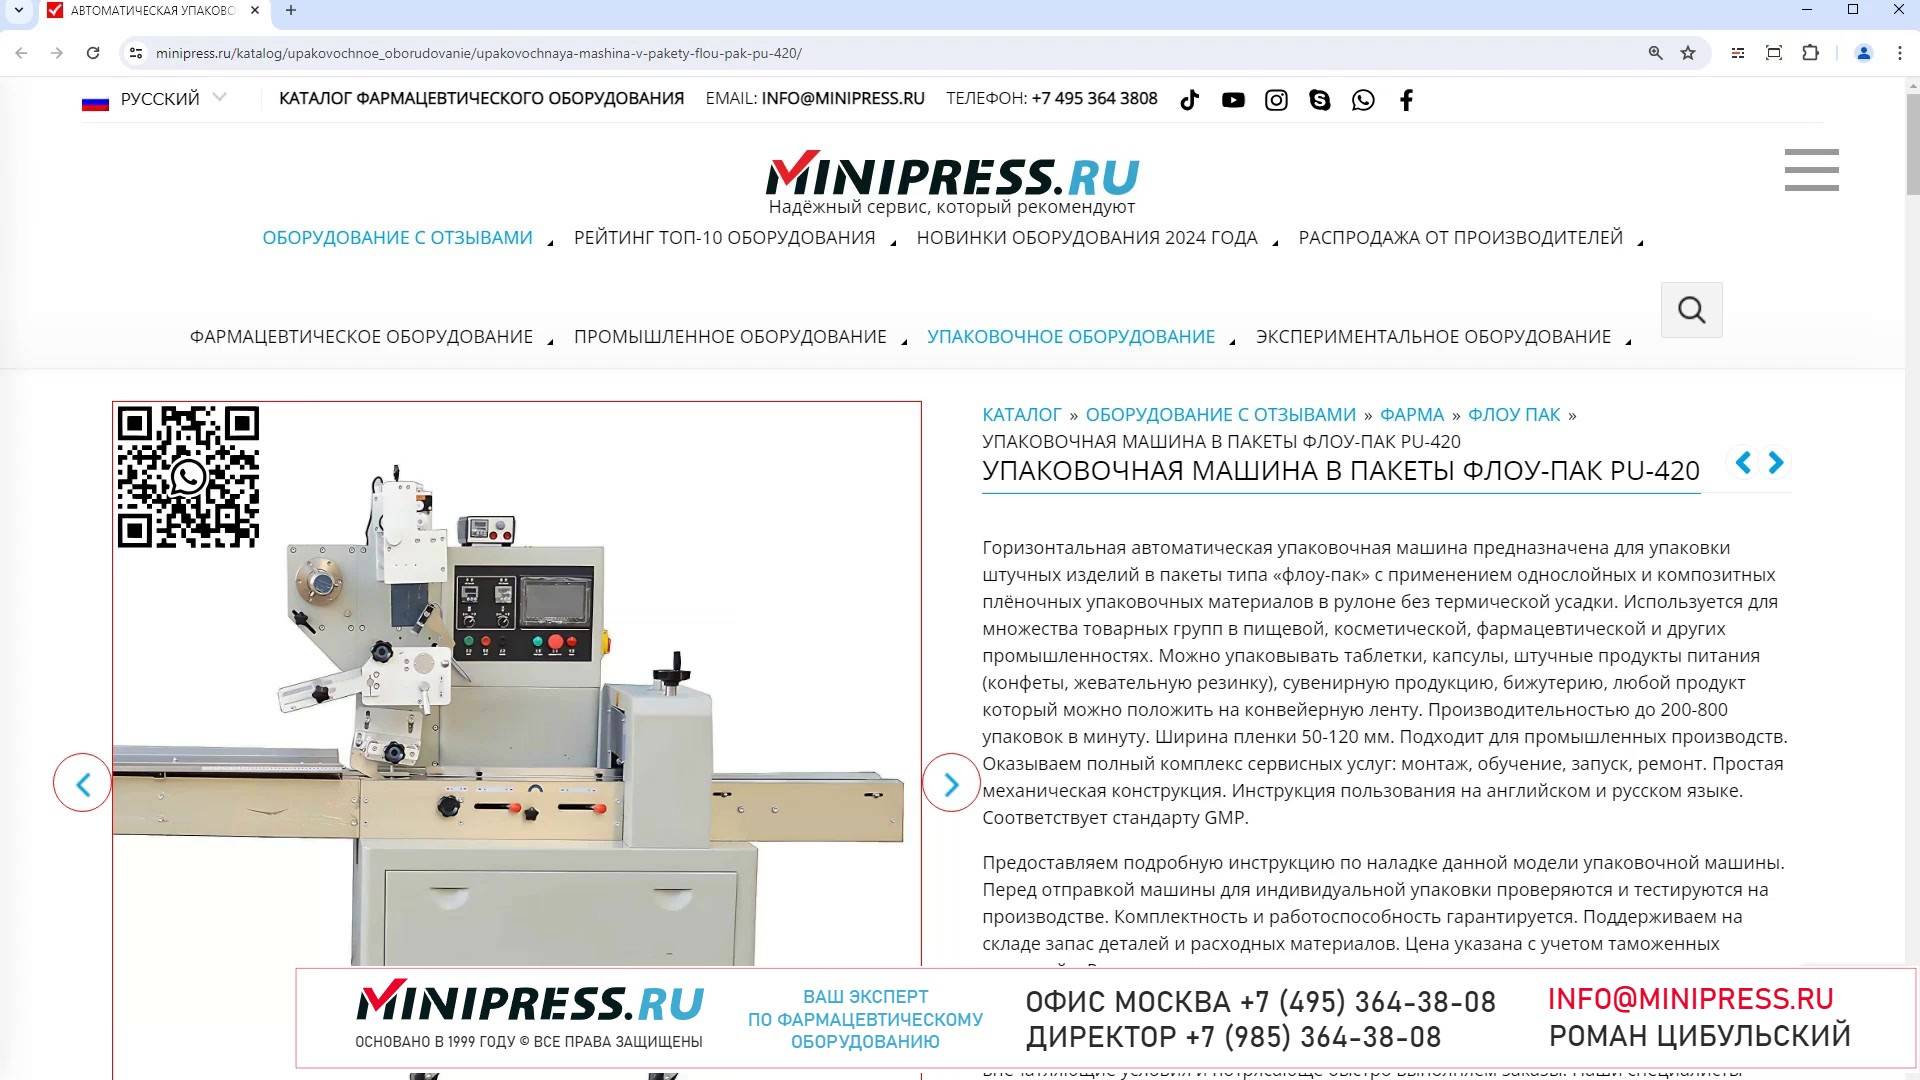 Minipress.ru Упаковочная машина в пакеты флоу-пак PU-420